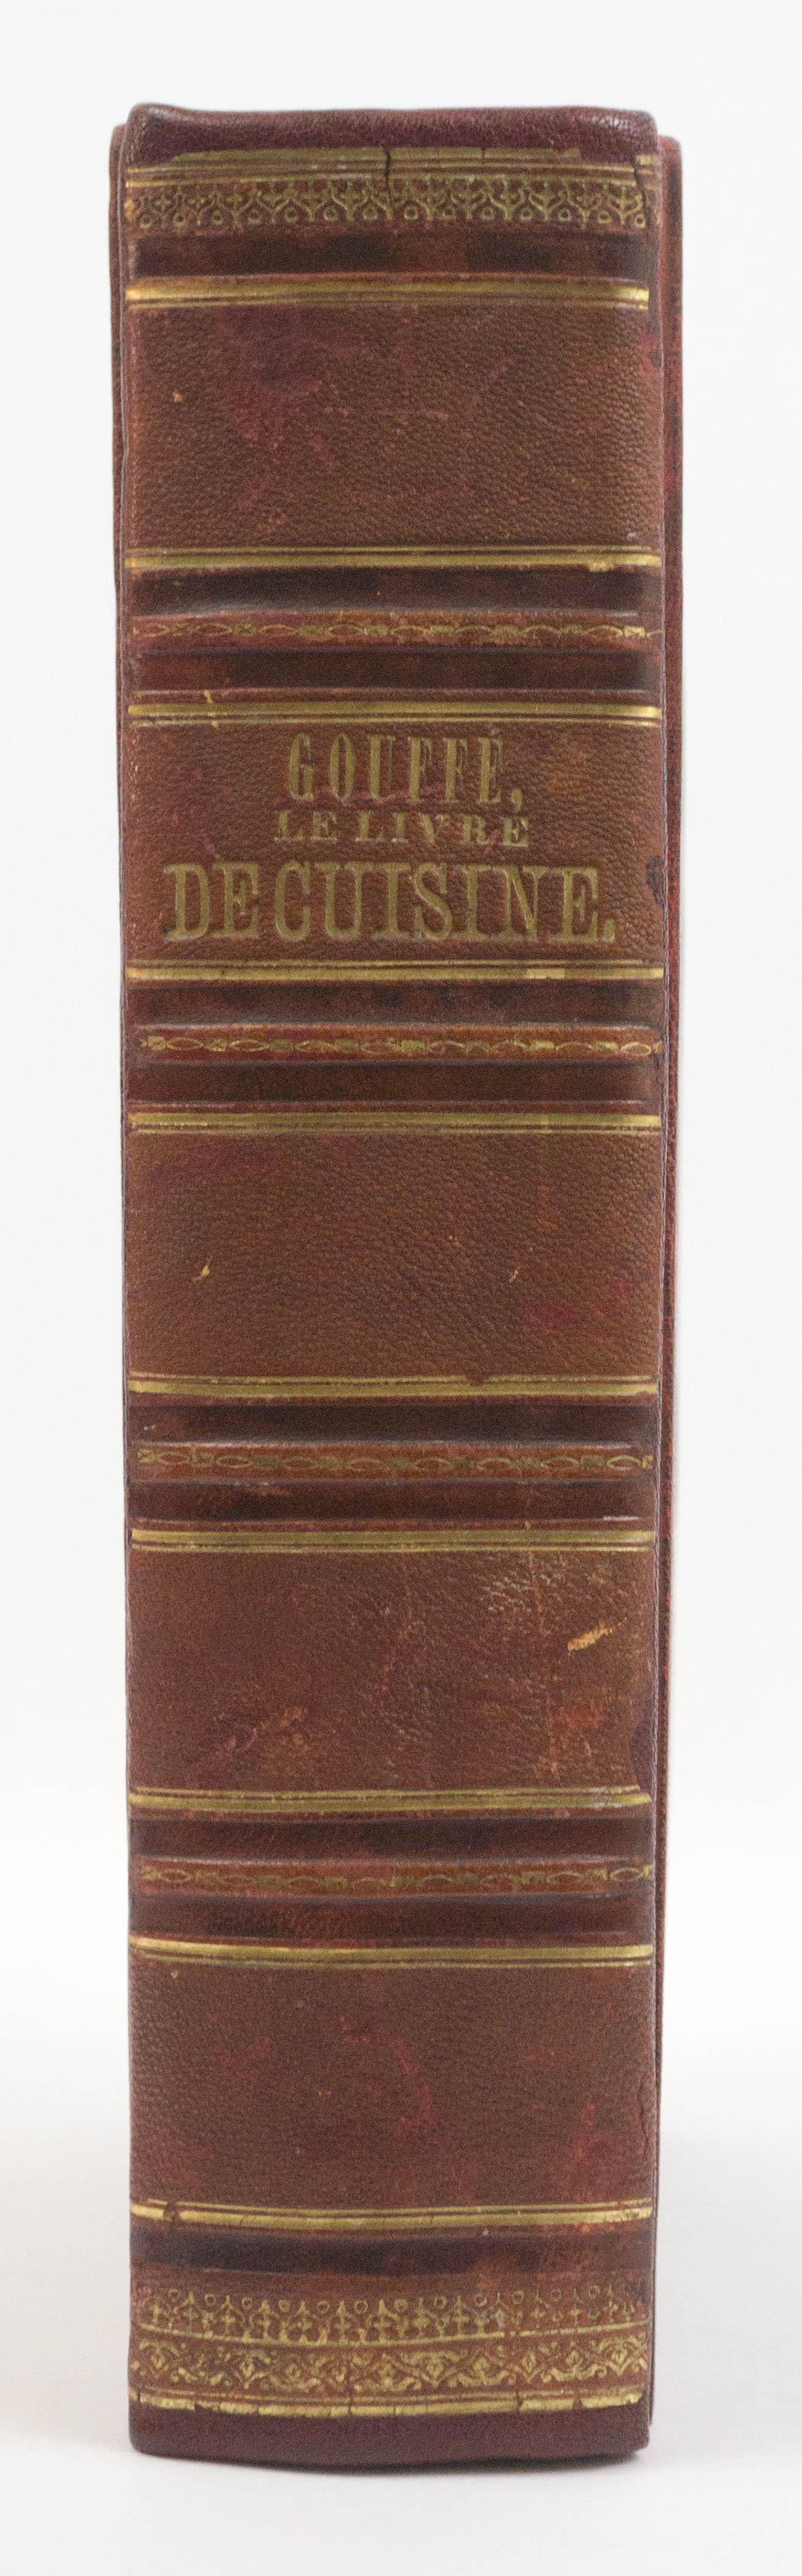 Le Livre de Cuisine by Jules Gouffe 1867 Edition